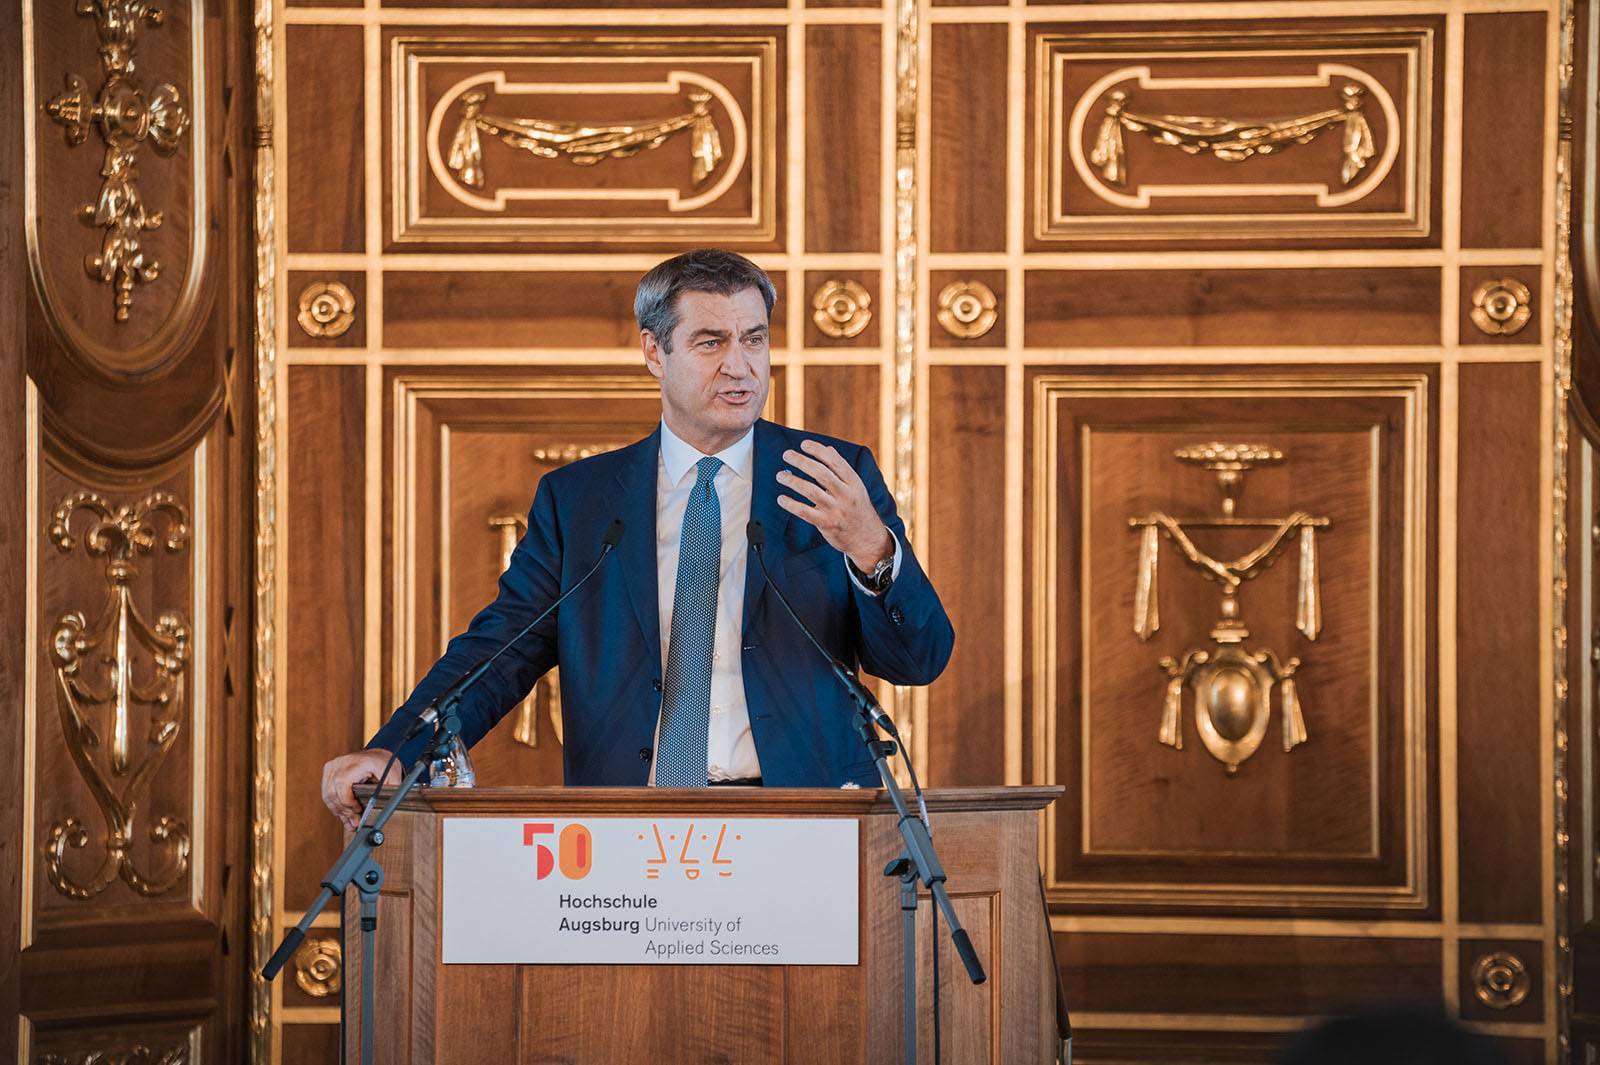 Ministerpräsident Dr. Markus Söder beim Festakt "50 Jahre Hochschule Augsburg" im Goldenen Saal der Stadt Augsburg